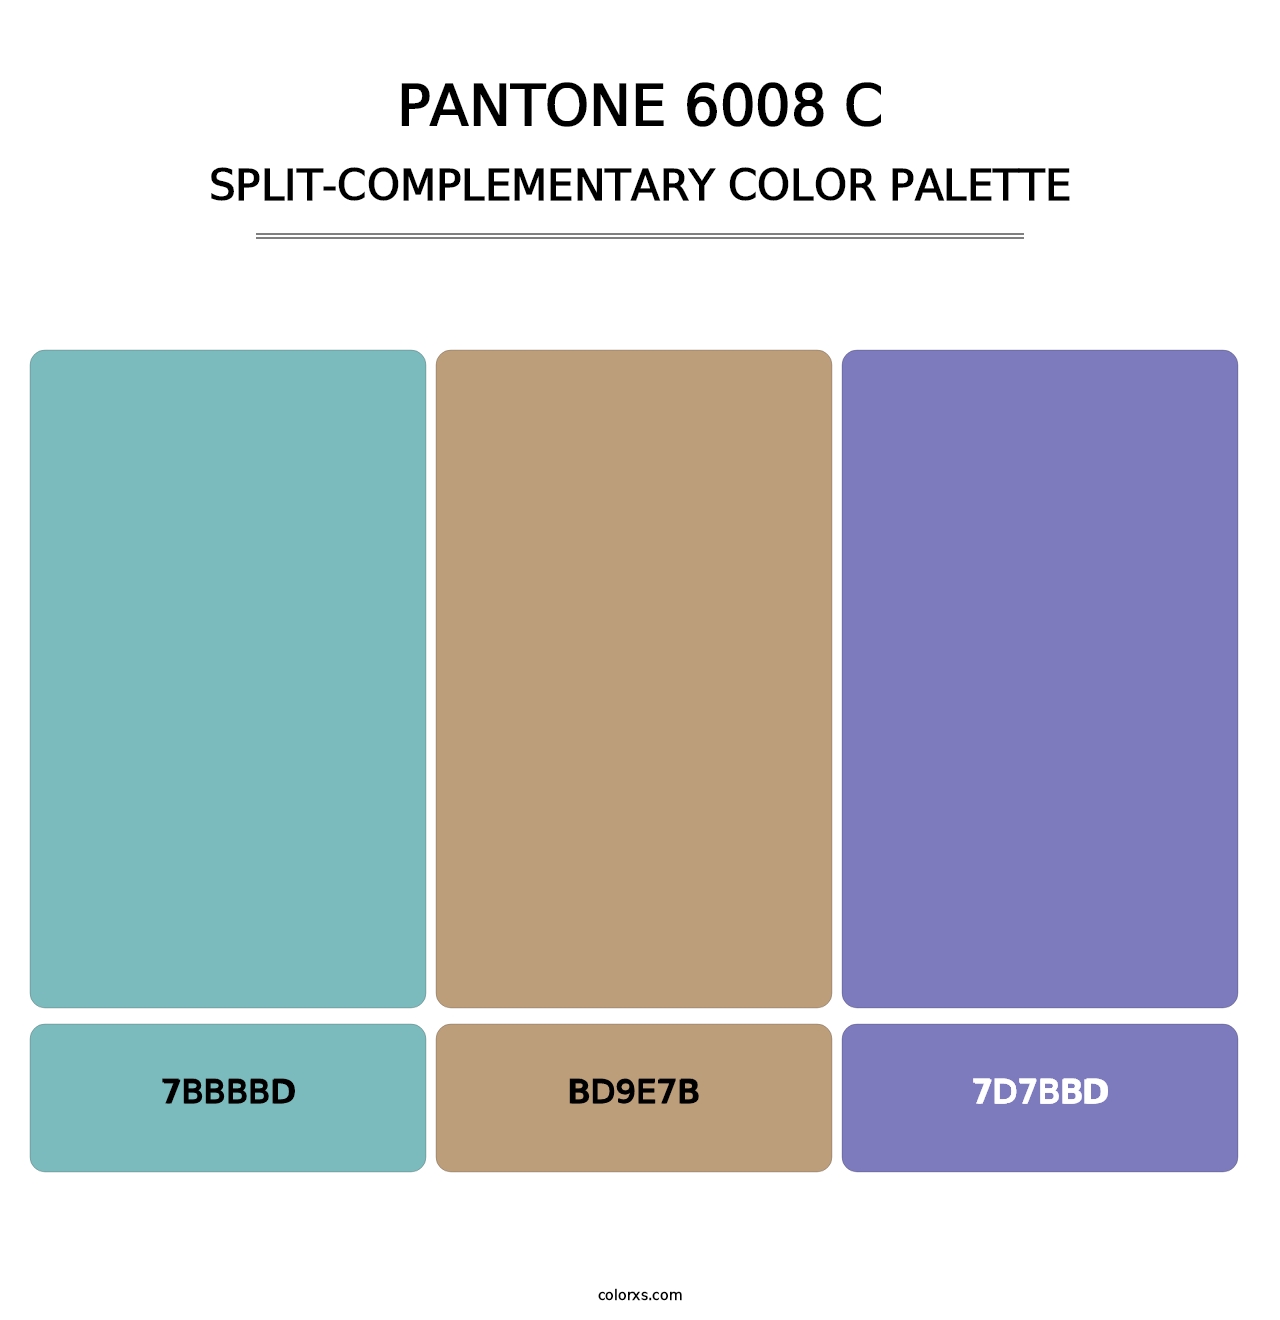 PANTONE 6008 C - Split-Complementary Color Palette